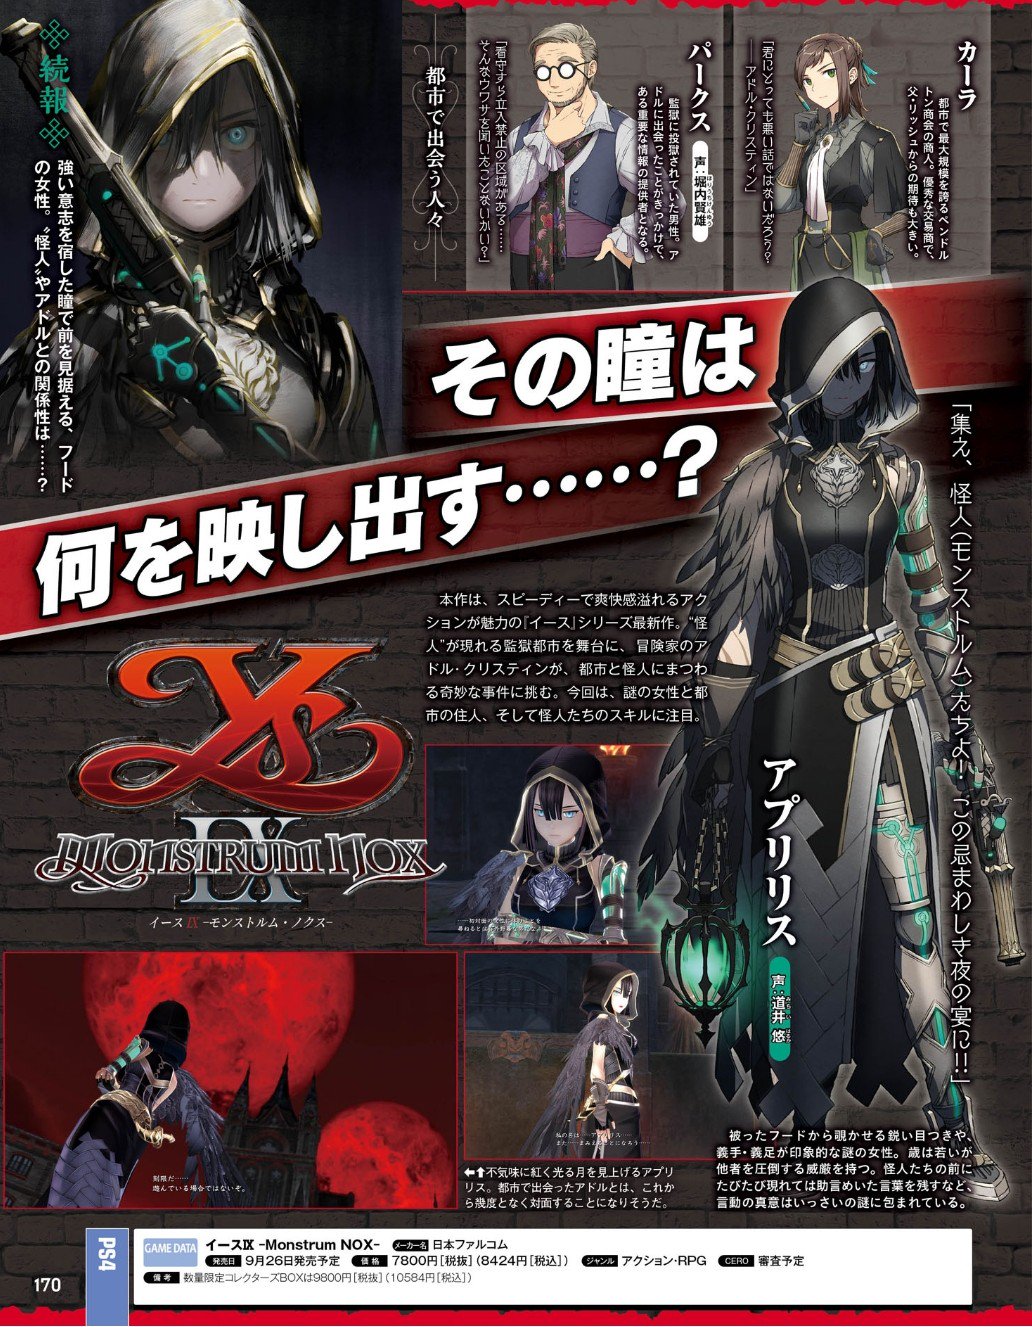 Creative Kofi Translations Screens From July 11th Issue Of Famitsu Magazine Ysix Atelierryza アトリエシリーズ